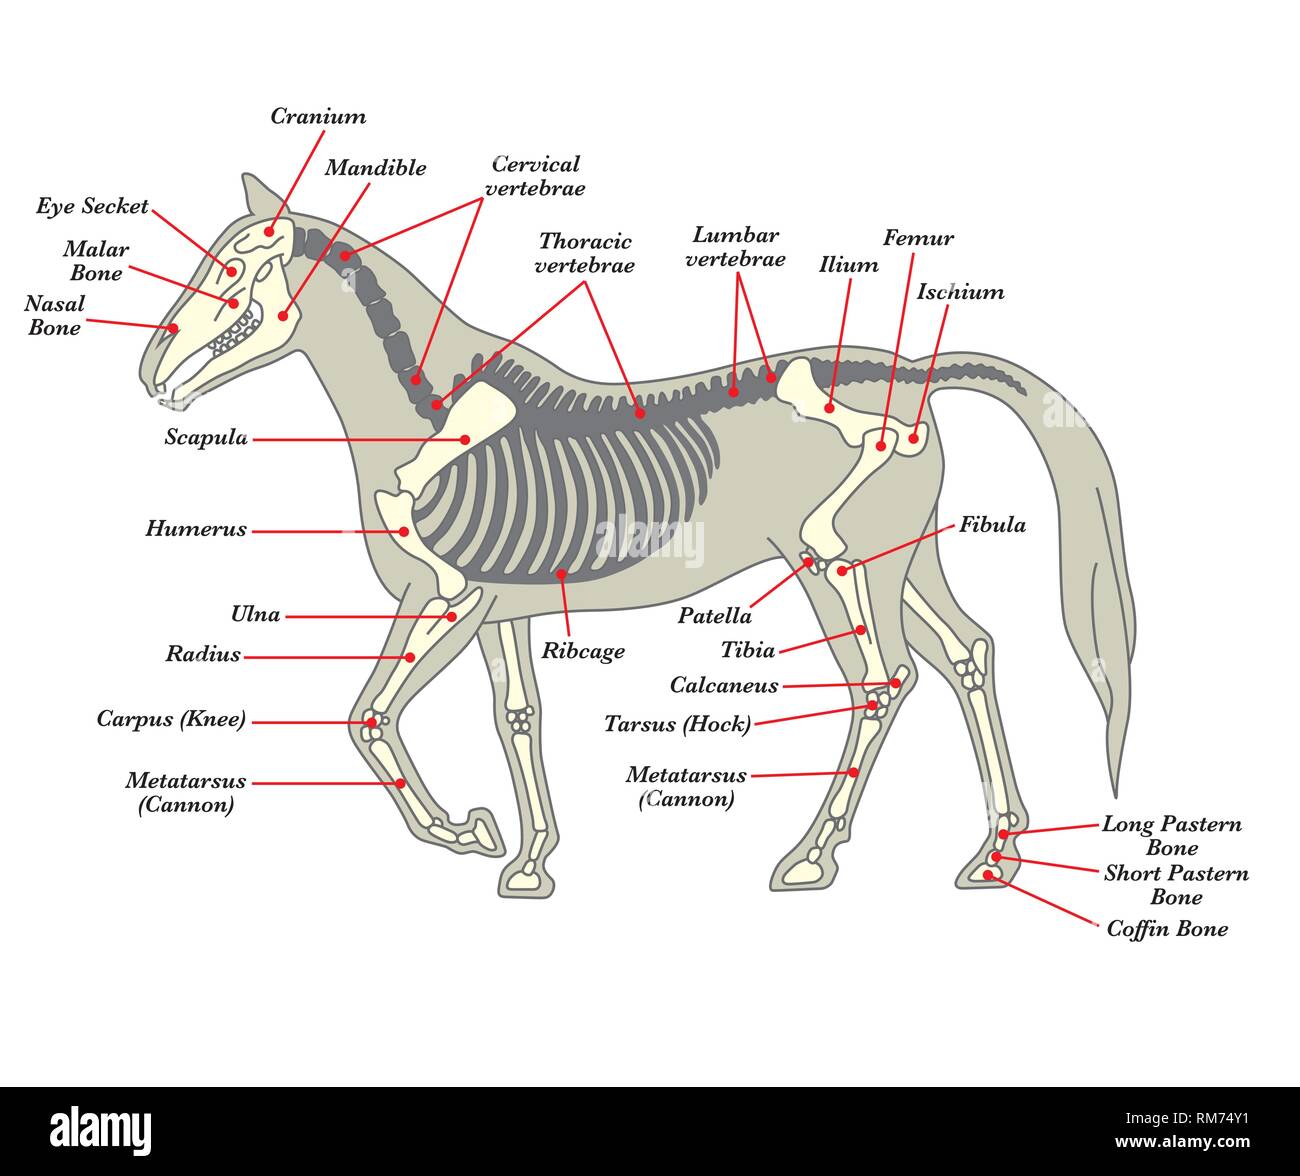 Запястье лошади. Кости лошади. Скелет лошади. Скелет лошади с названием костей. Скелет лошади анатомия.